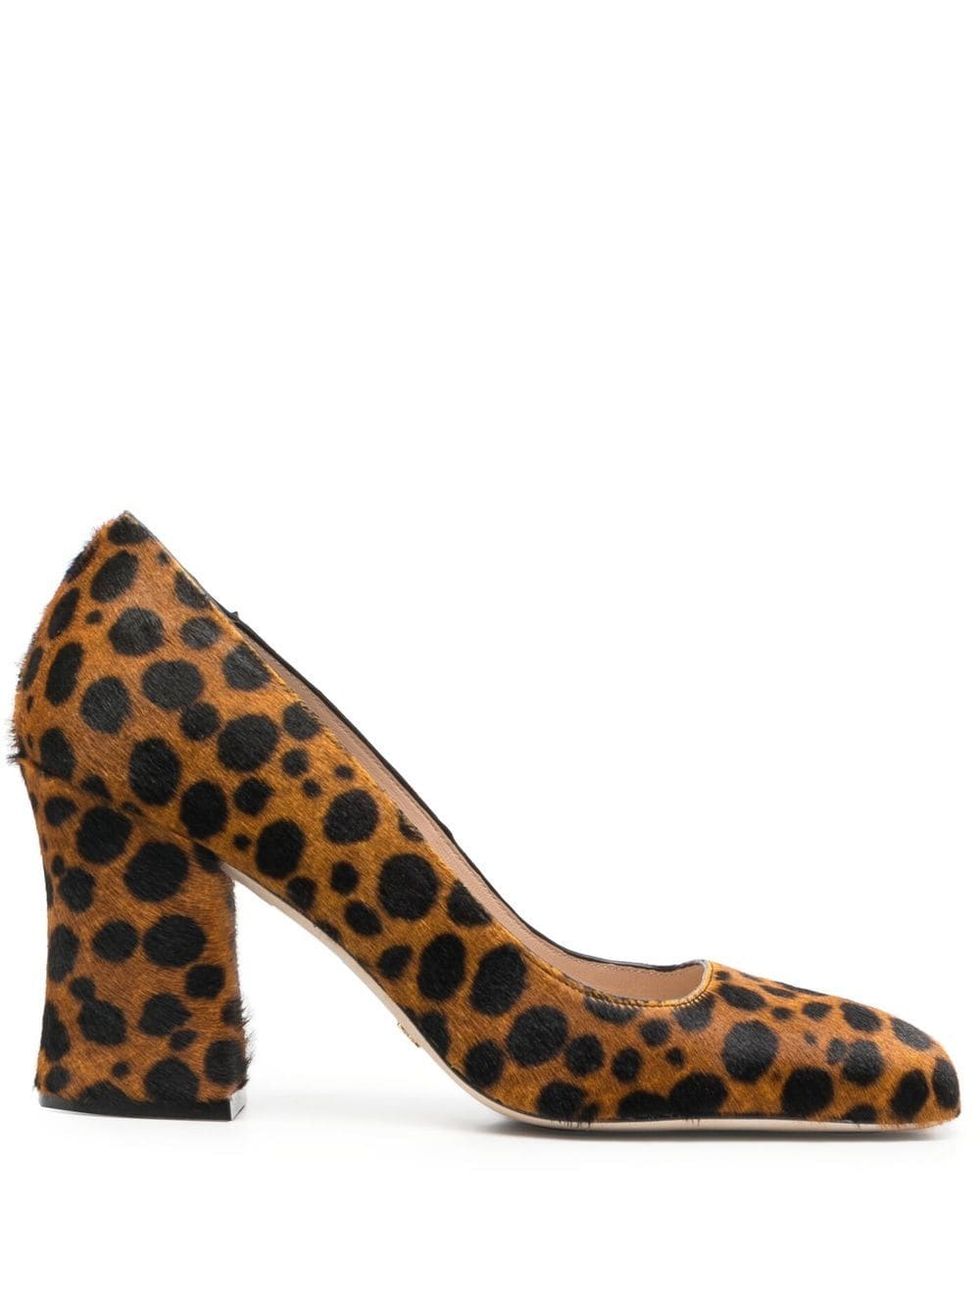 14 zapatos tacón cómodo de leopardo bonitos